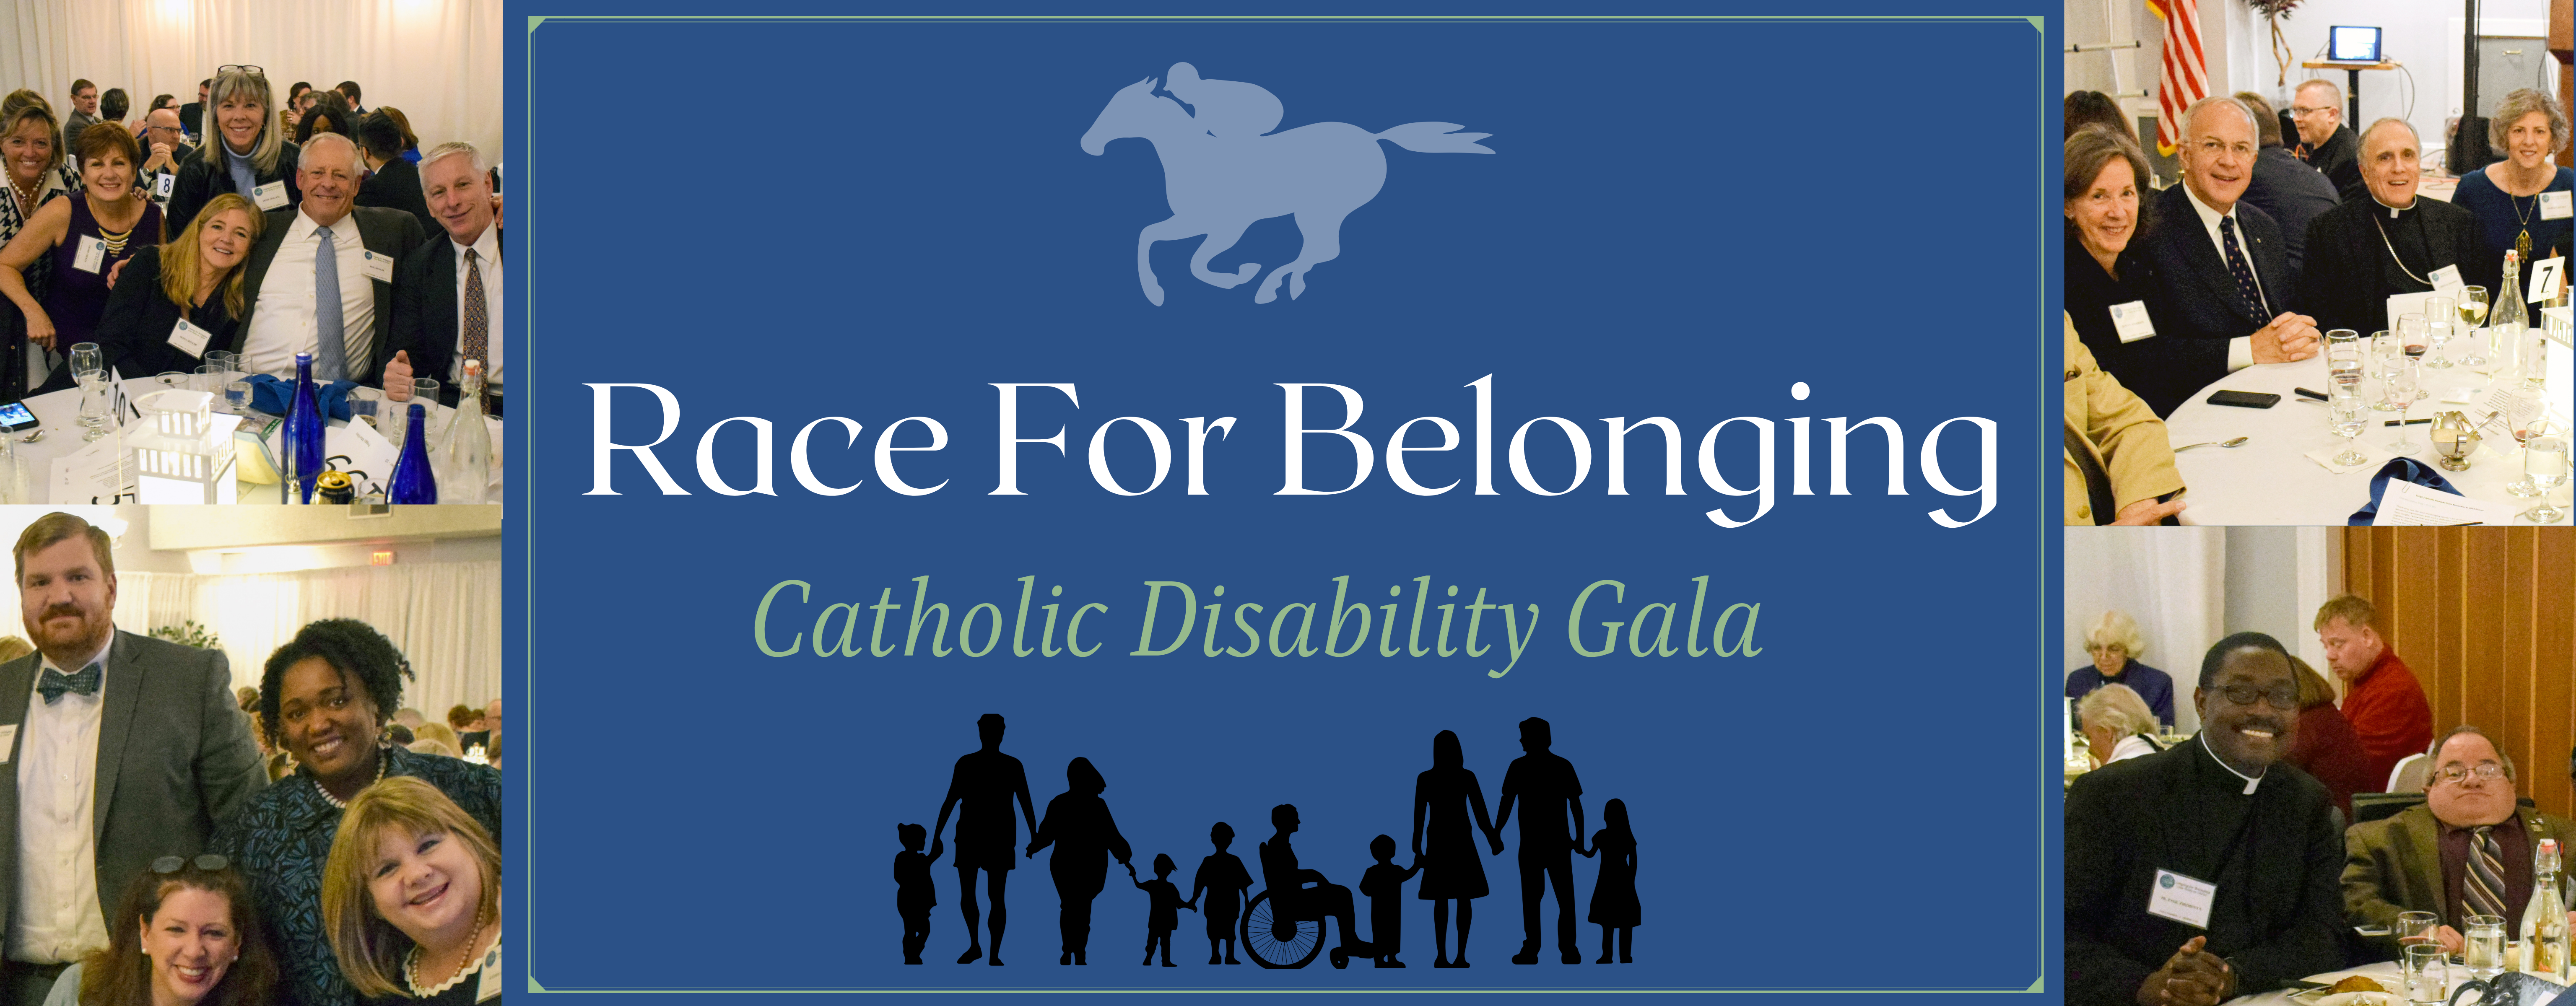 Race for Belonging Catholic Disability Gala